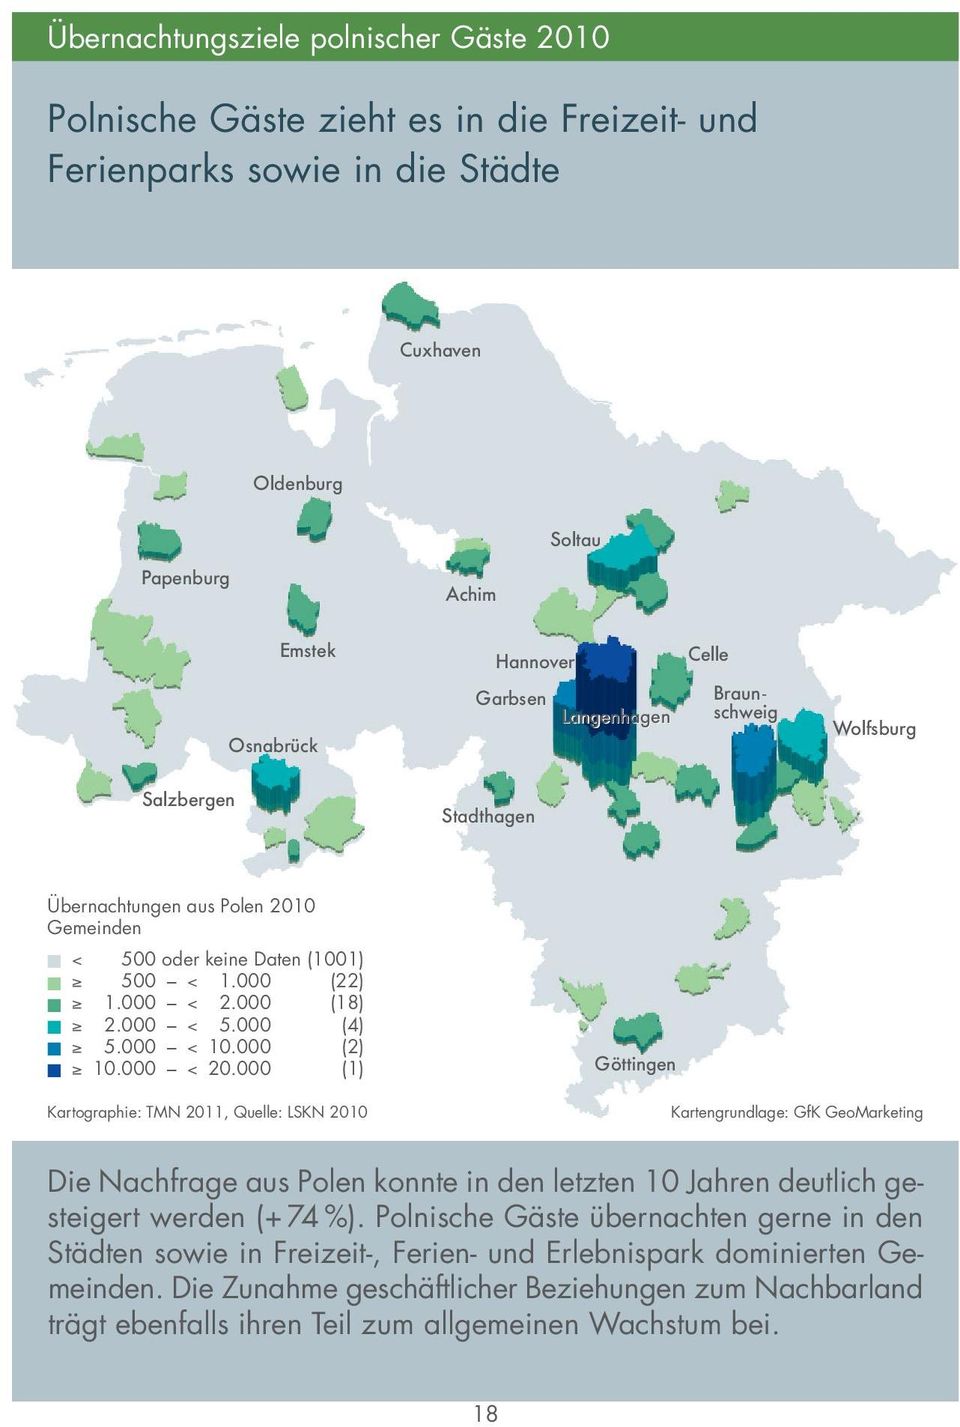 000 (2) 10.000 < 20.000 (1) Göttingen Kartographie: TMN 2011, Quelle: LSKN 2010 Die Nachfrage aus Polen konnte in den letzten 10 Jahren deutlich gesteigert werden (+74%).